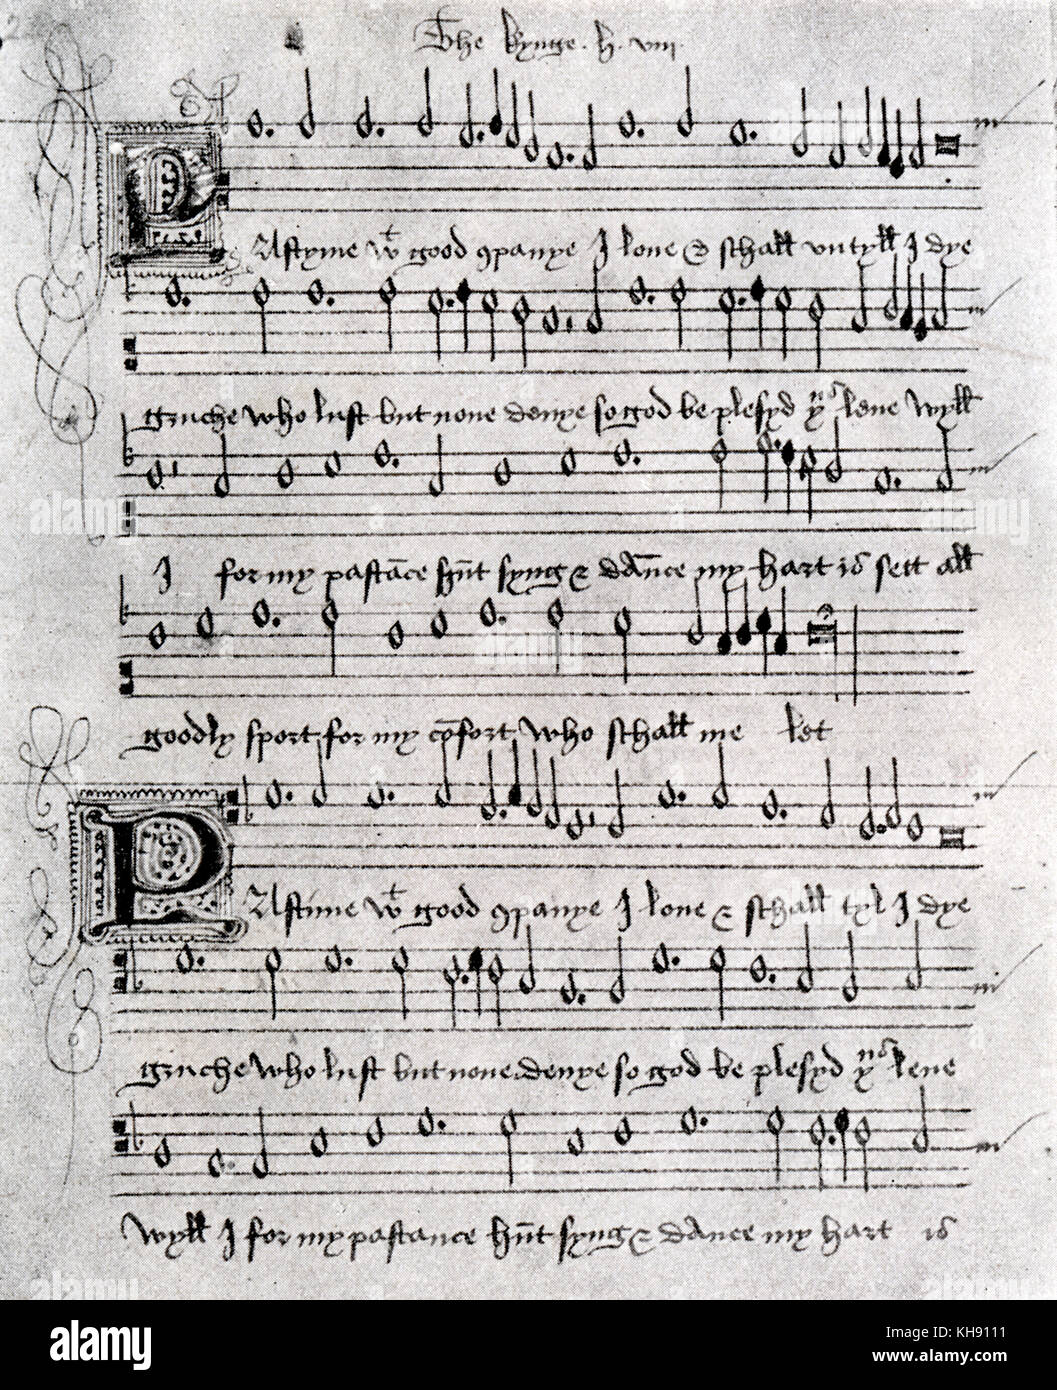 Avec passe-temps bonne compagnie - Madrigal. Musique pour un madrigal aurait été écrit par Henry VIII d'Angleterre. Seizième siècle. Archivé au British Museum. Banque D'Images